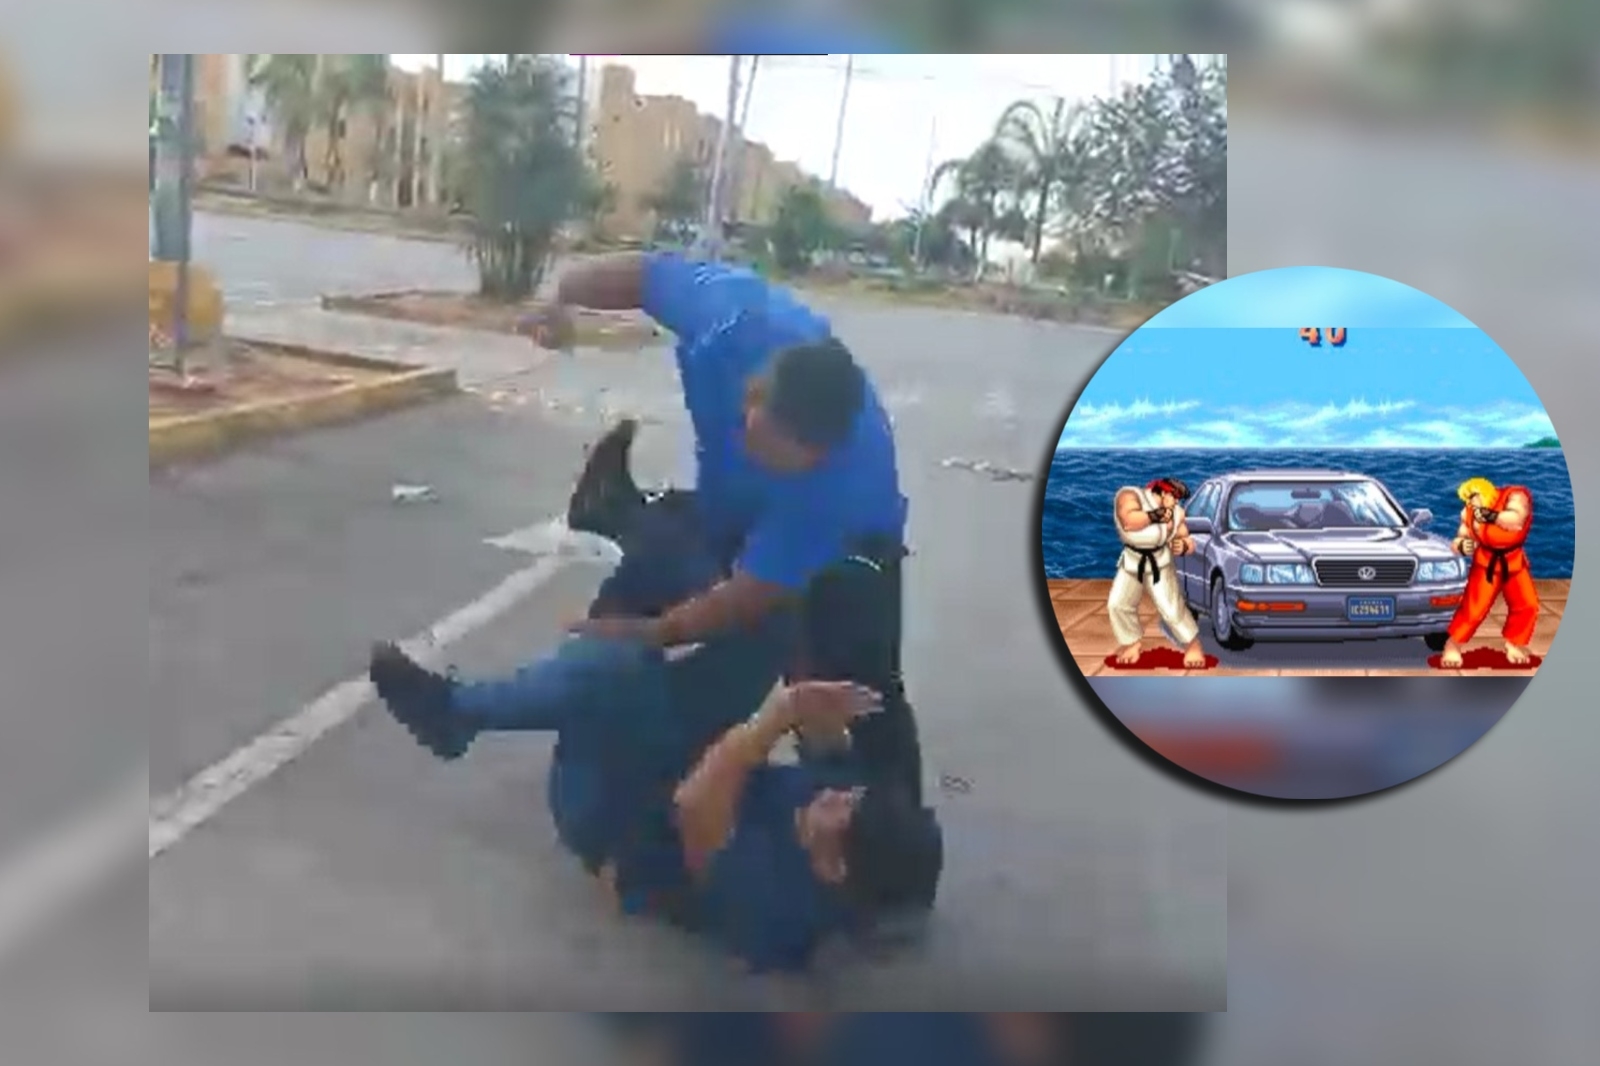 Al estilo Street Fighter, conductores de combis se agarran a golpes en Cancún: VIDEO